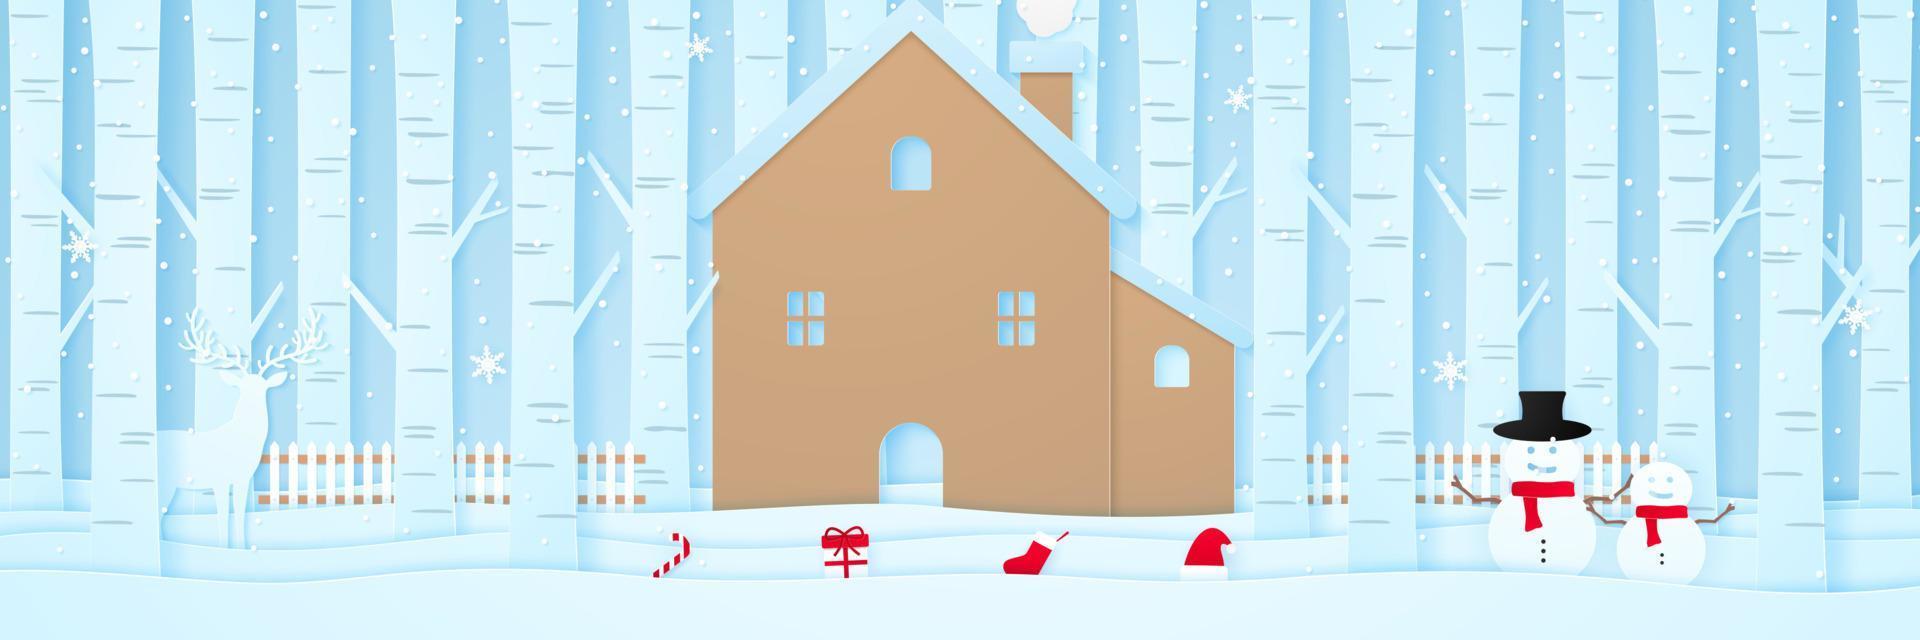 feliz navidad, casa con renos, muñeco de nieve, cosas navideñas, valla y pinos en la nieve en el paisaje invernal con nieve cayendo, estilo de arte en papel vector